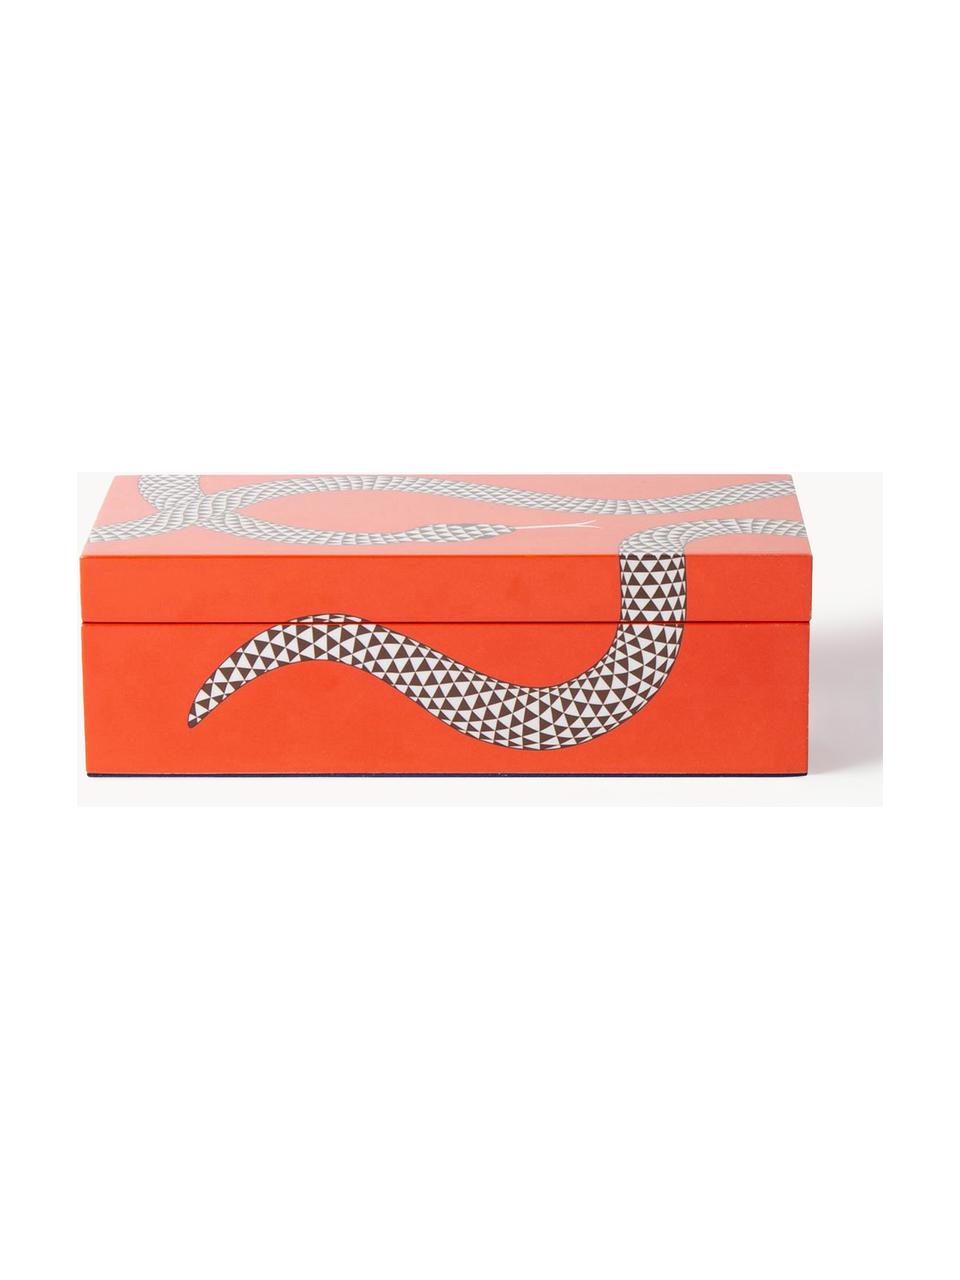 Handgefertigte Aufbewahrungsbox Eden, Holz, lackiert, Orange, Weiß, B 20 x T 10 cm